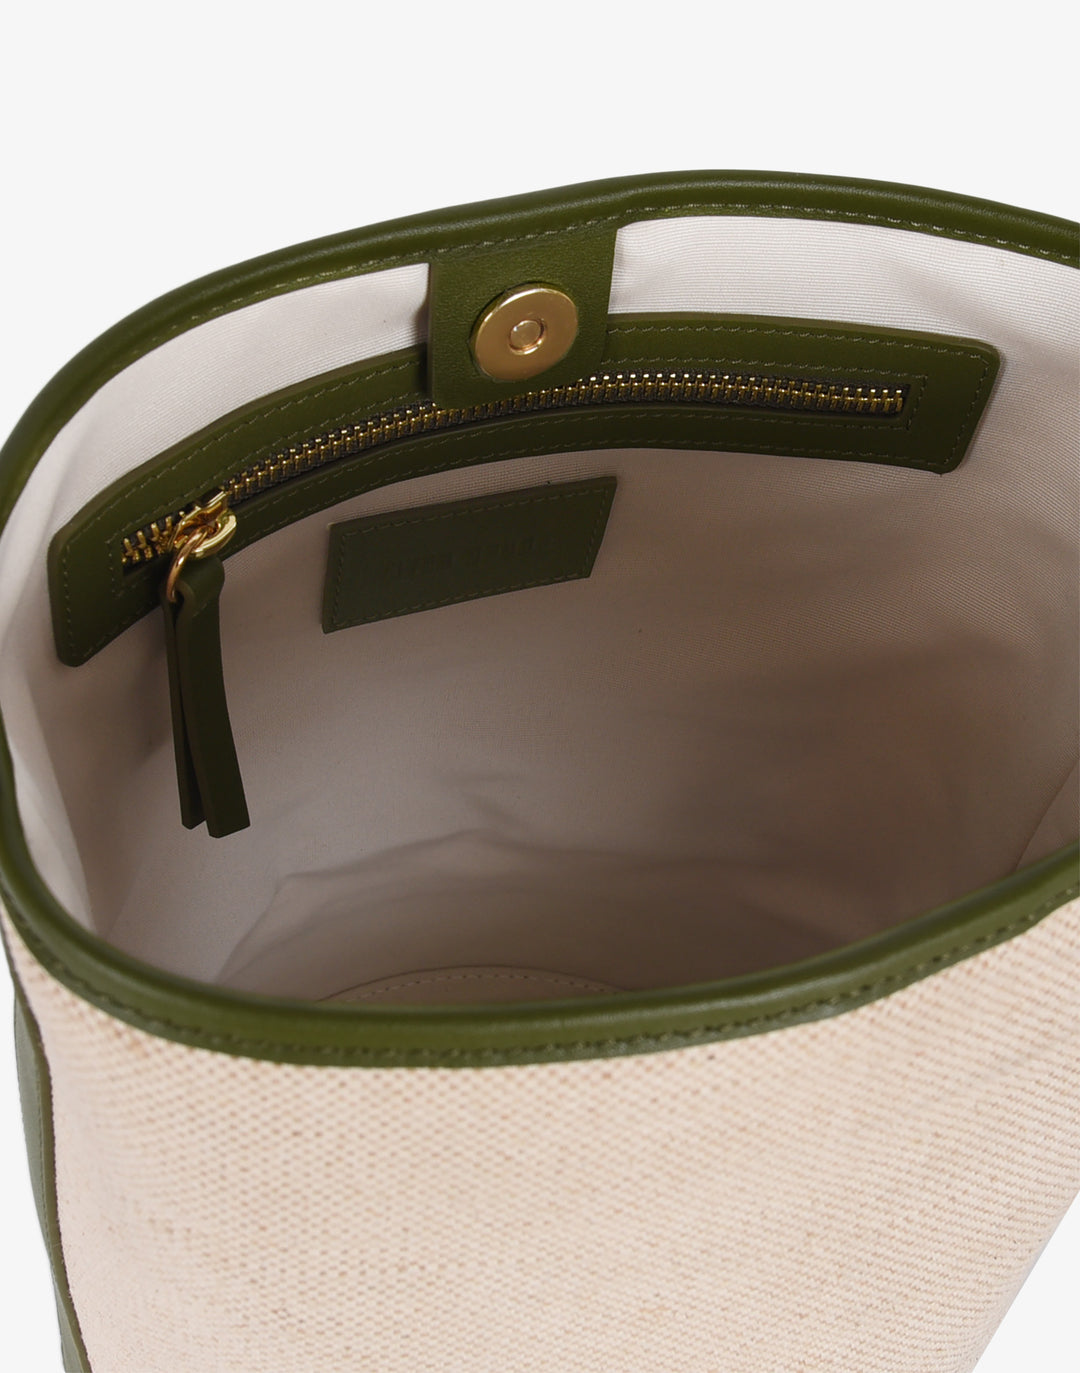 Hyer Goods cotton linen canvas Convertible Bucket Bag_linen olive#color_linen-olive